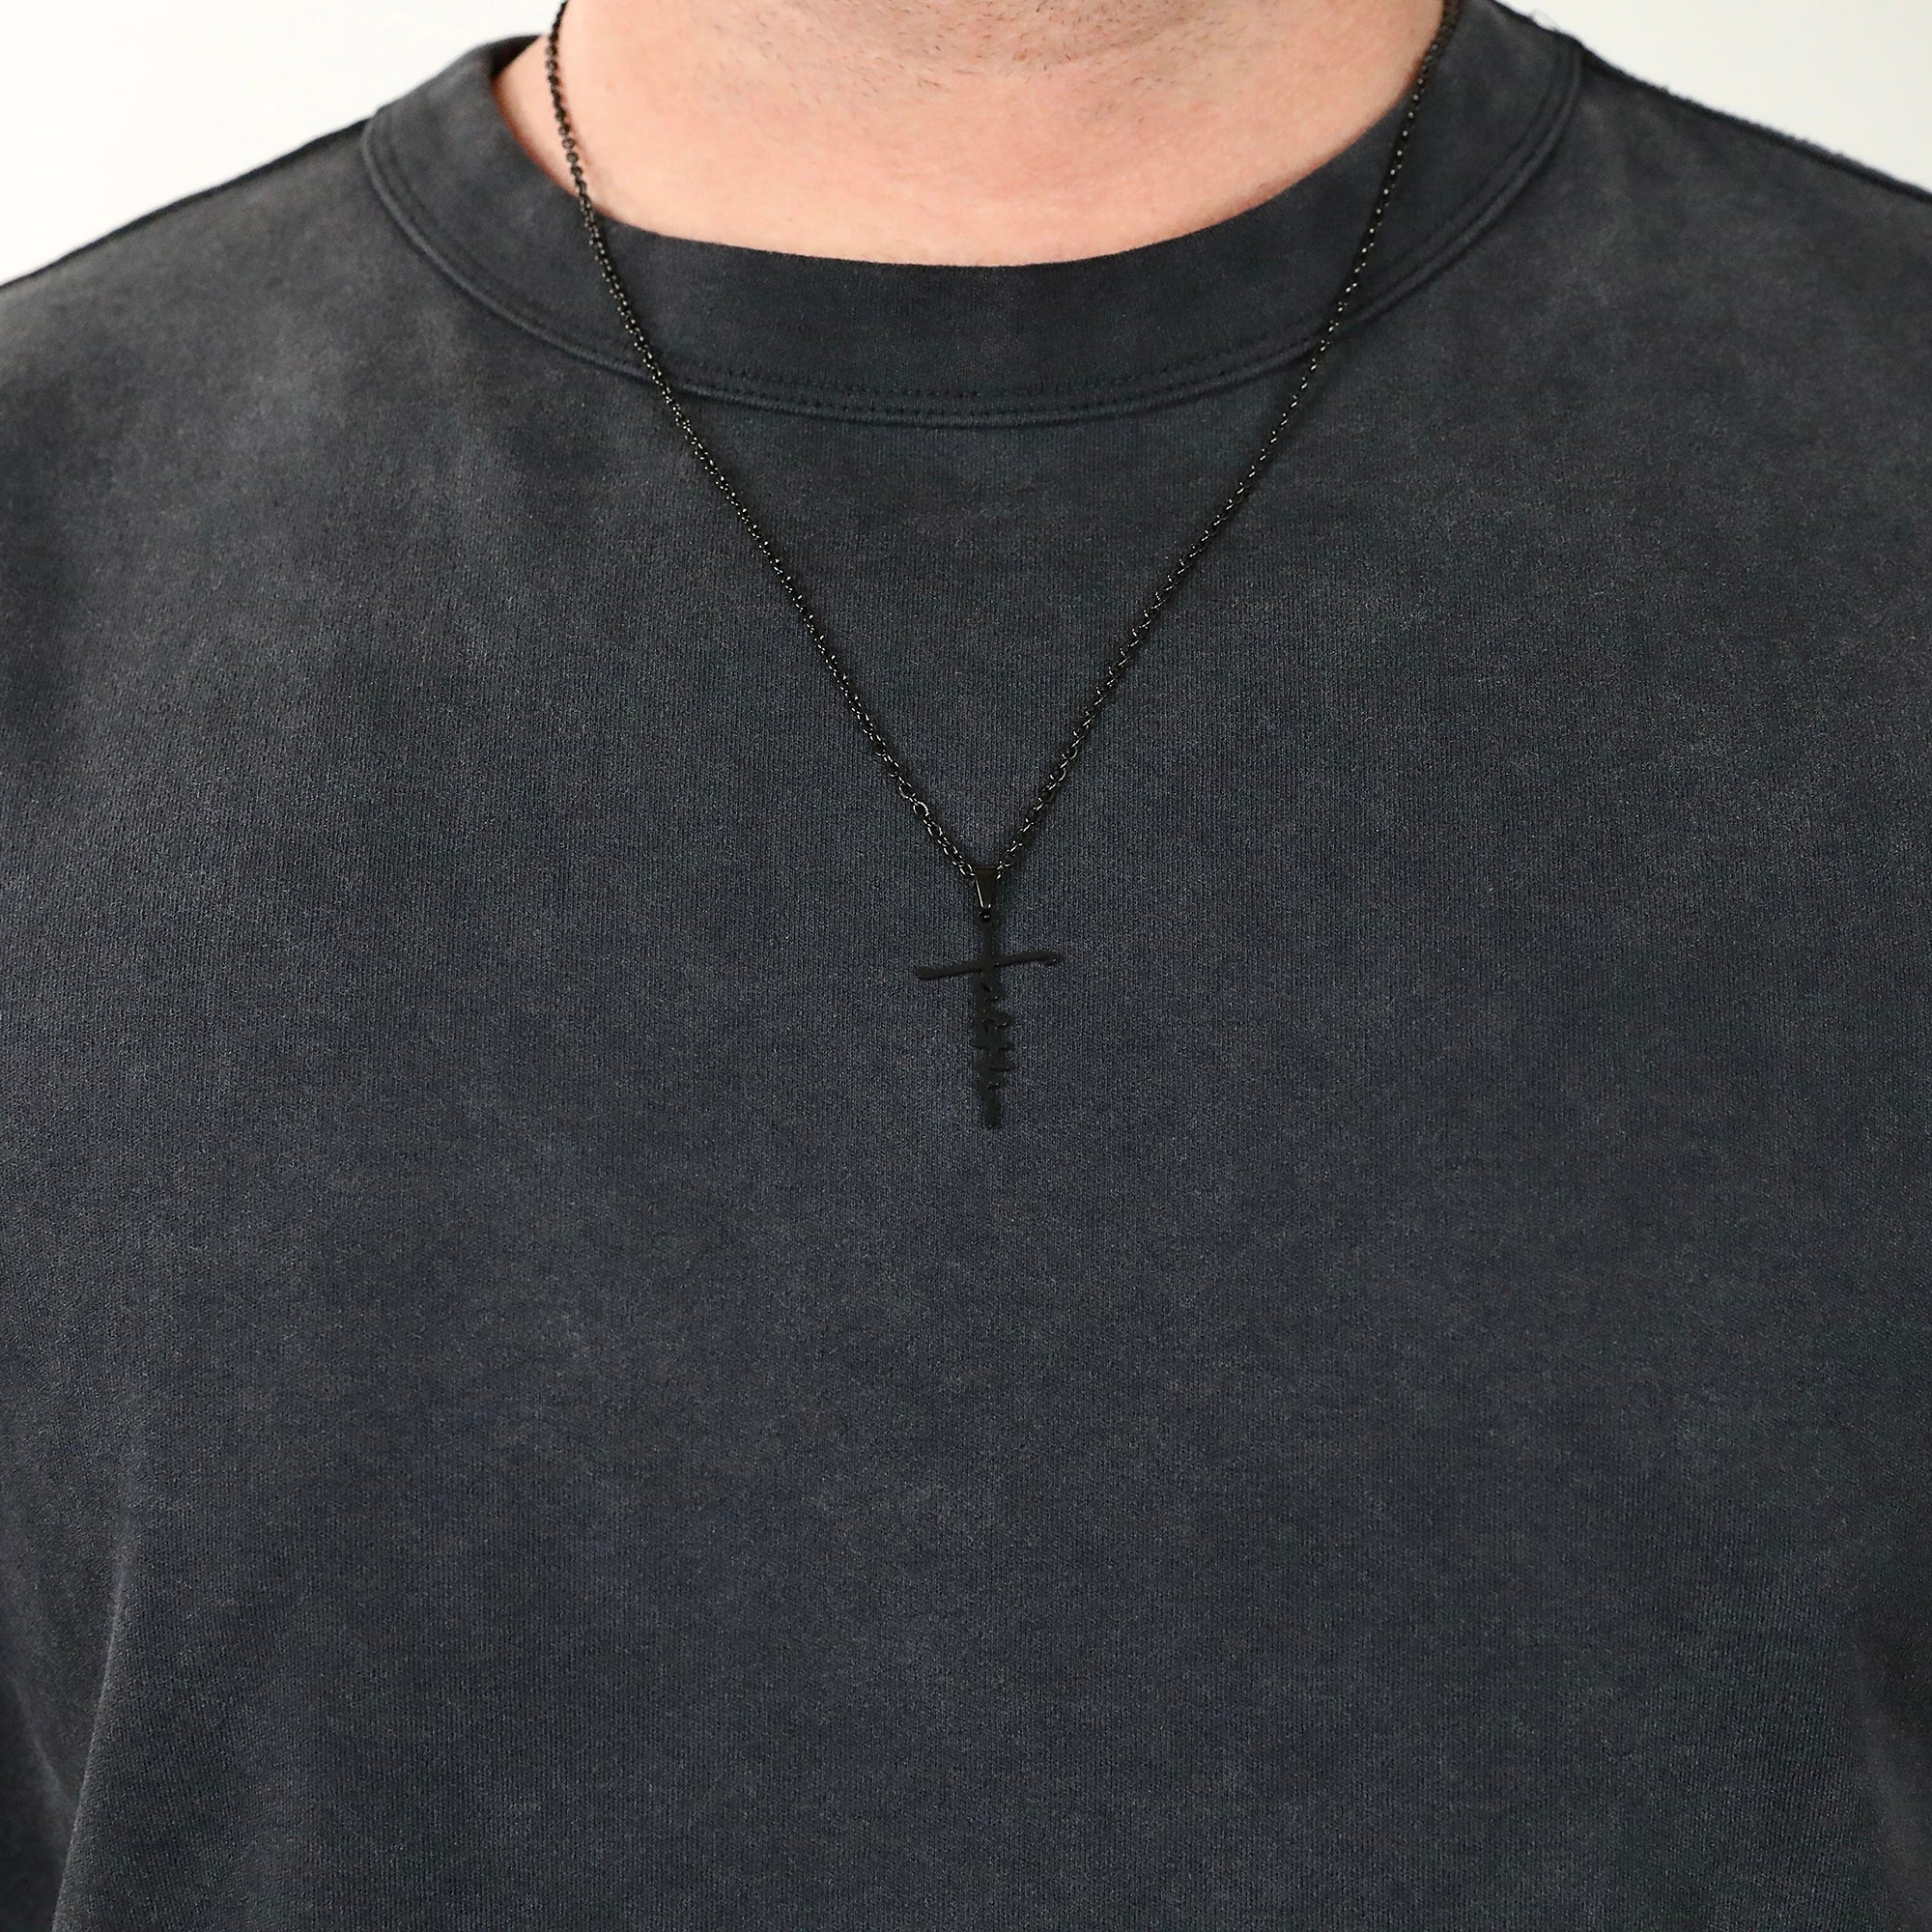 Faith Cross Necklace - Black